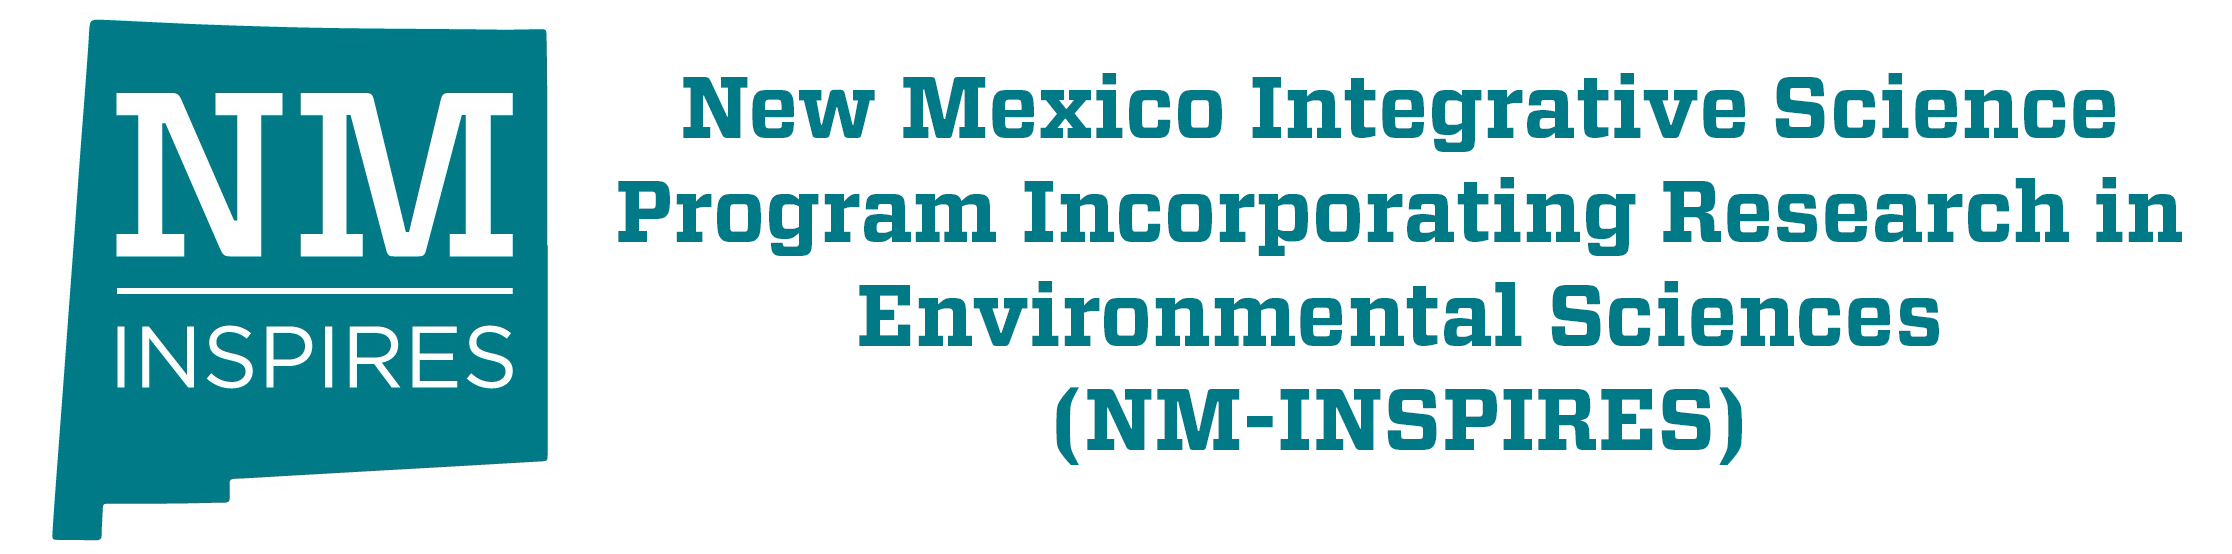 Интегративная научная программа Нью-Мексико, включающая исследования в области наук об окружающей среде (NM-INSPIRES)